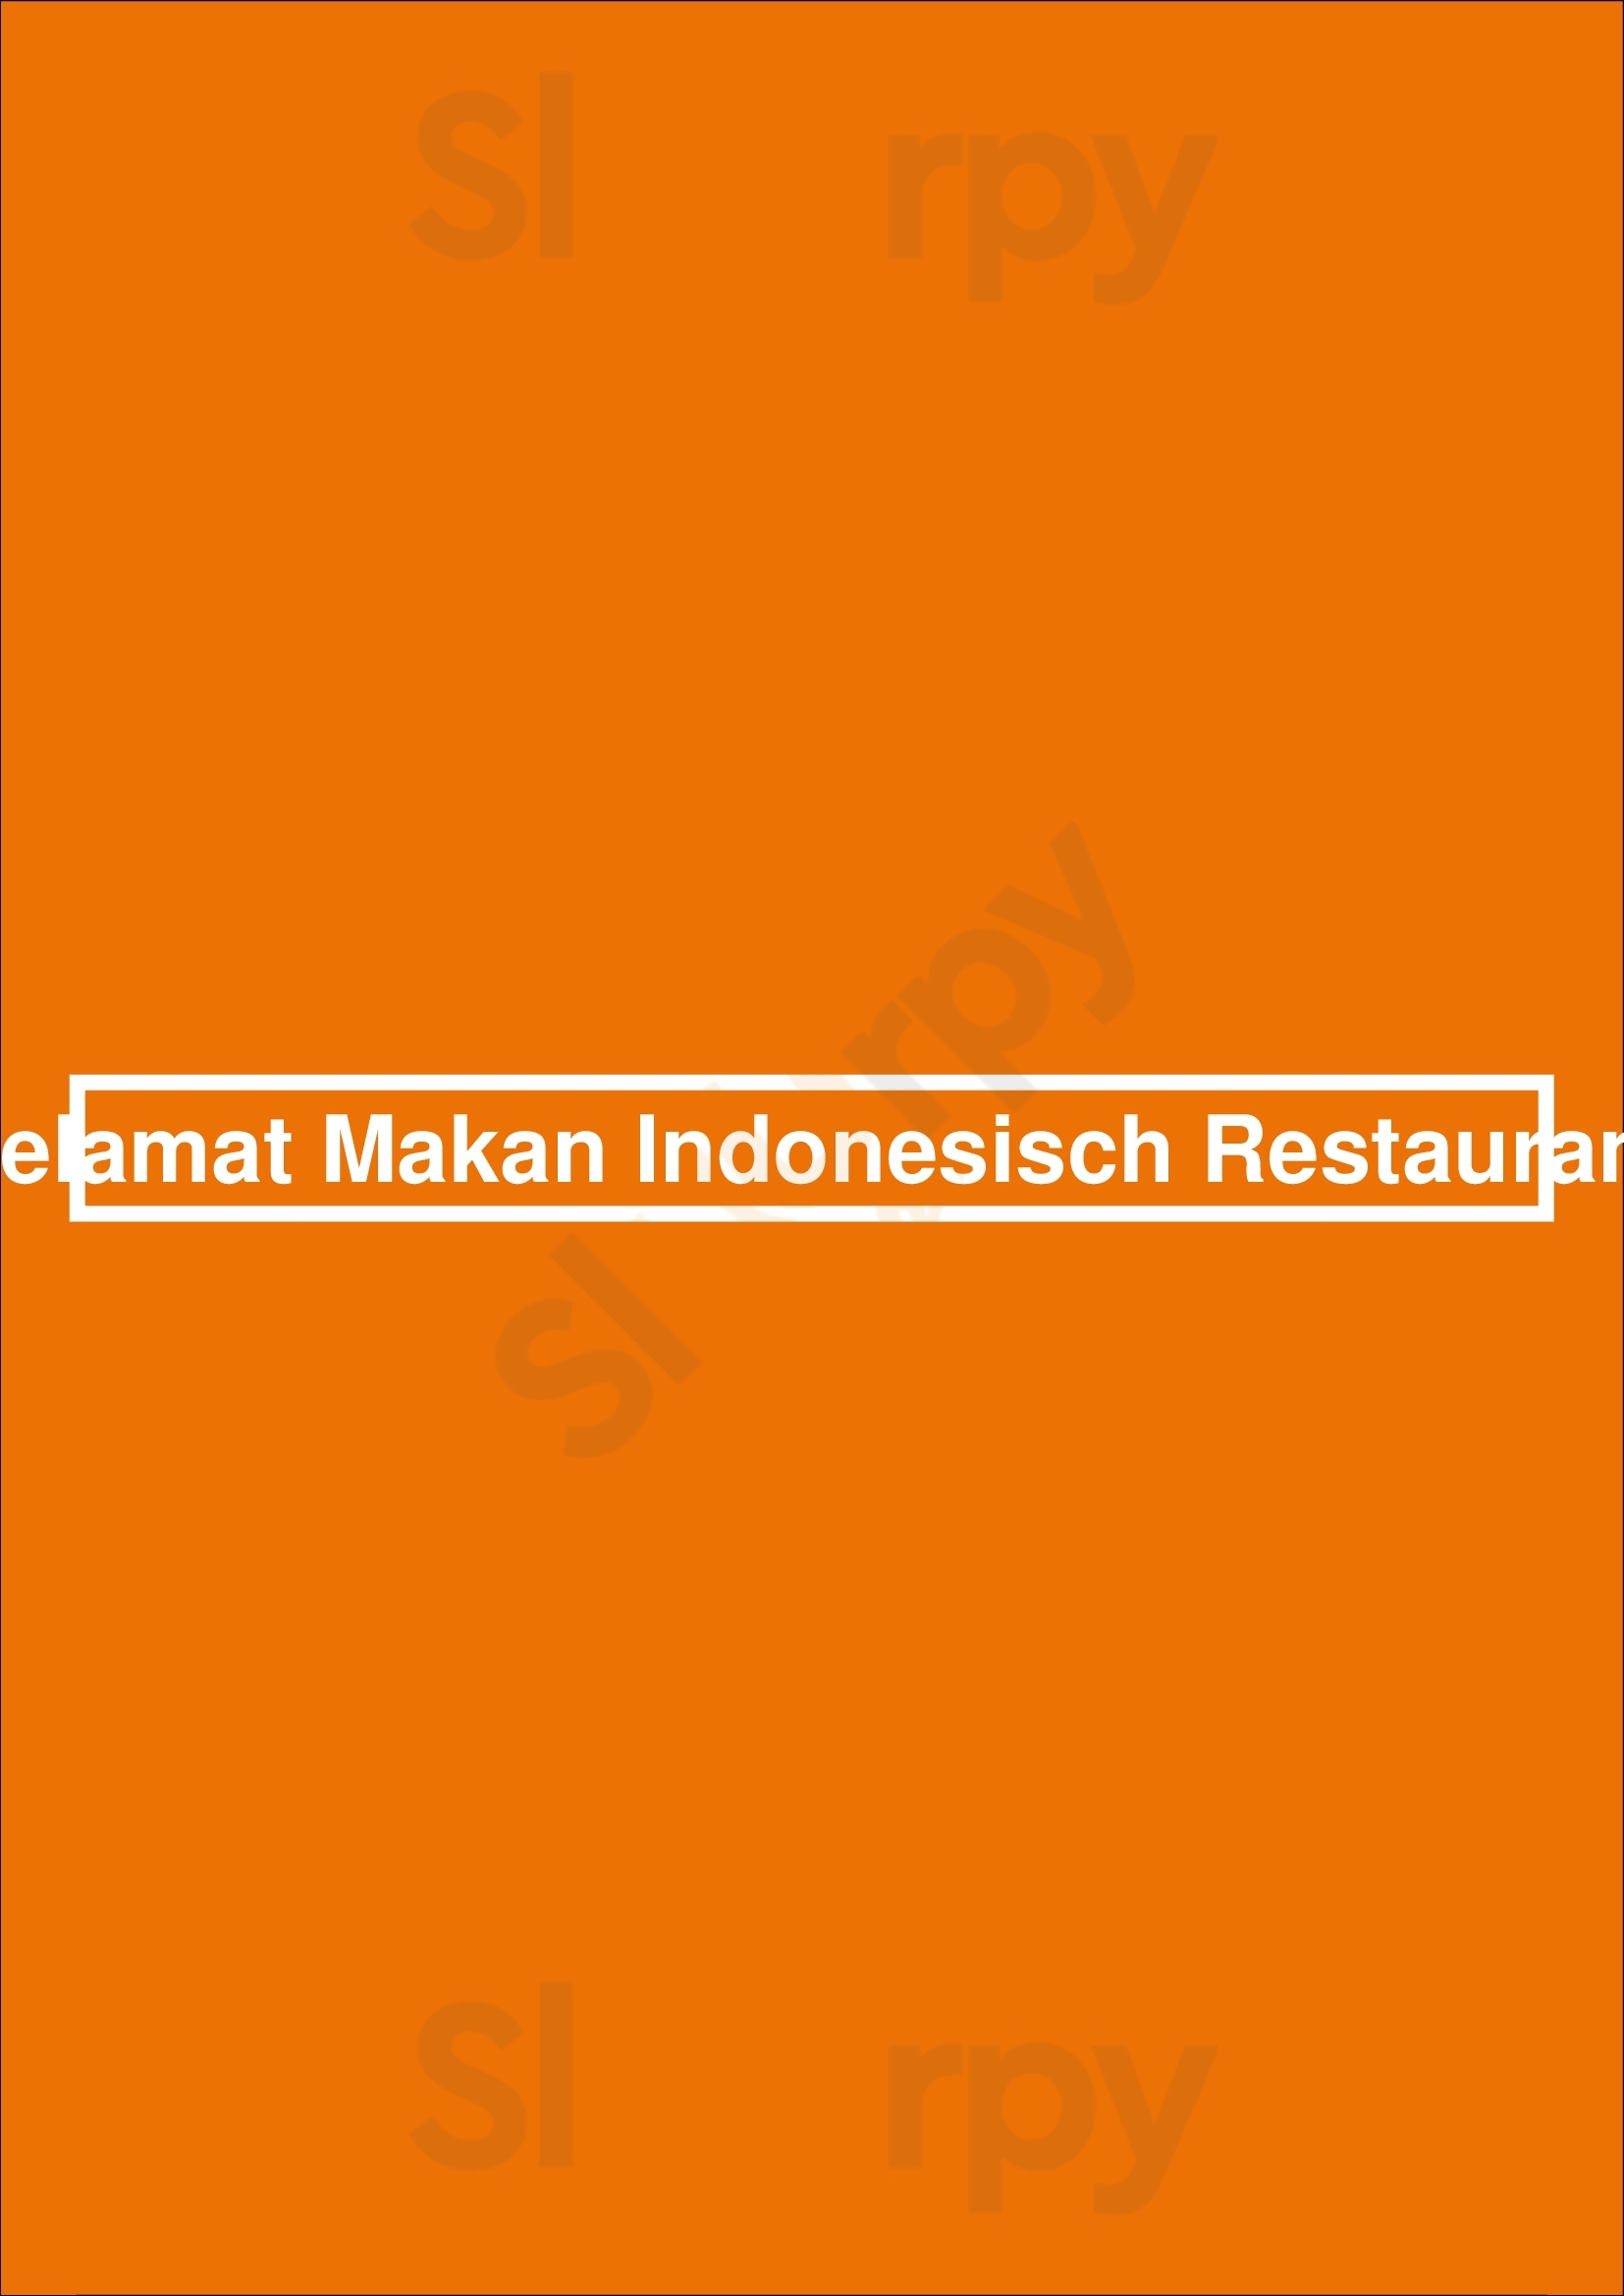 Selamat Makan Indonesisch Restaurant Utrecht Menu - 1